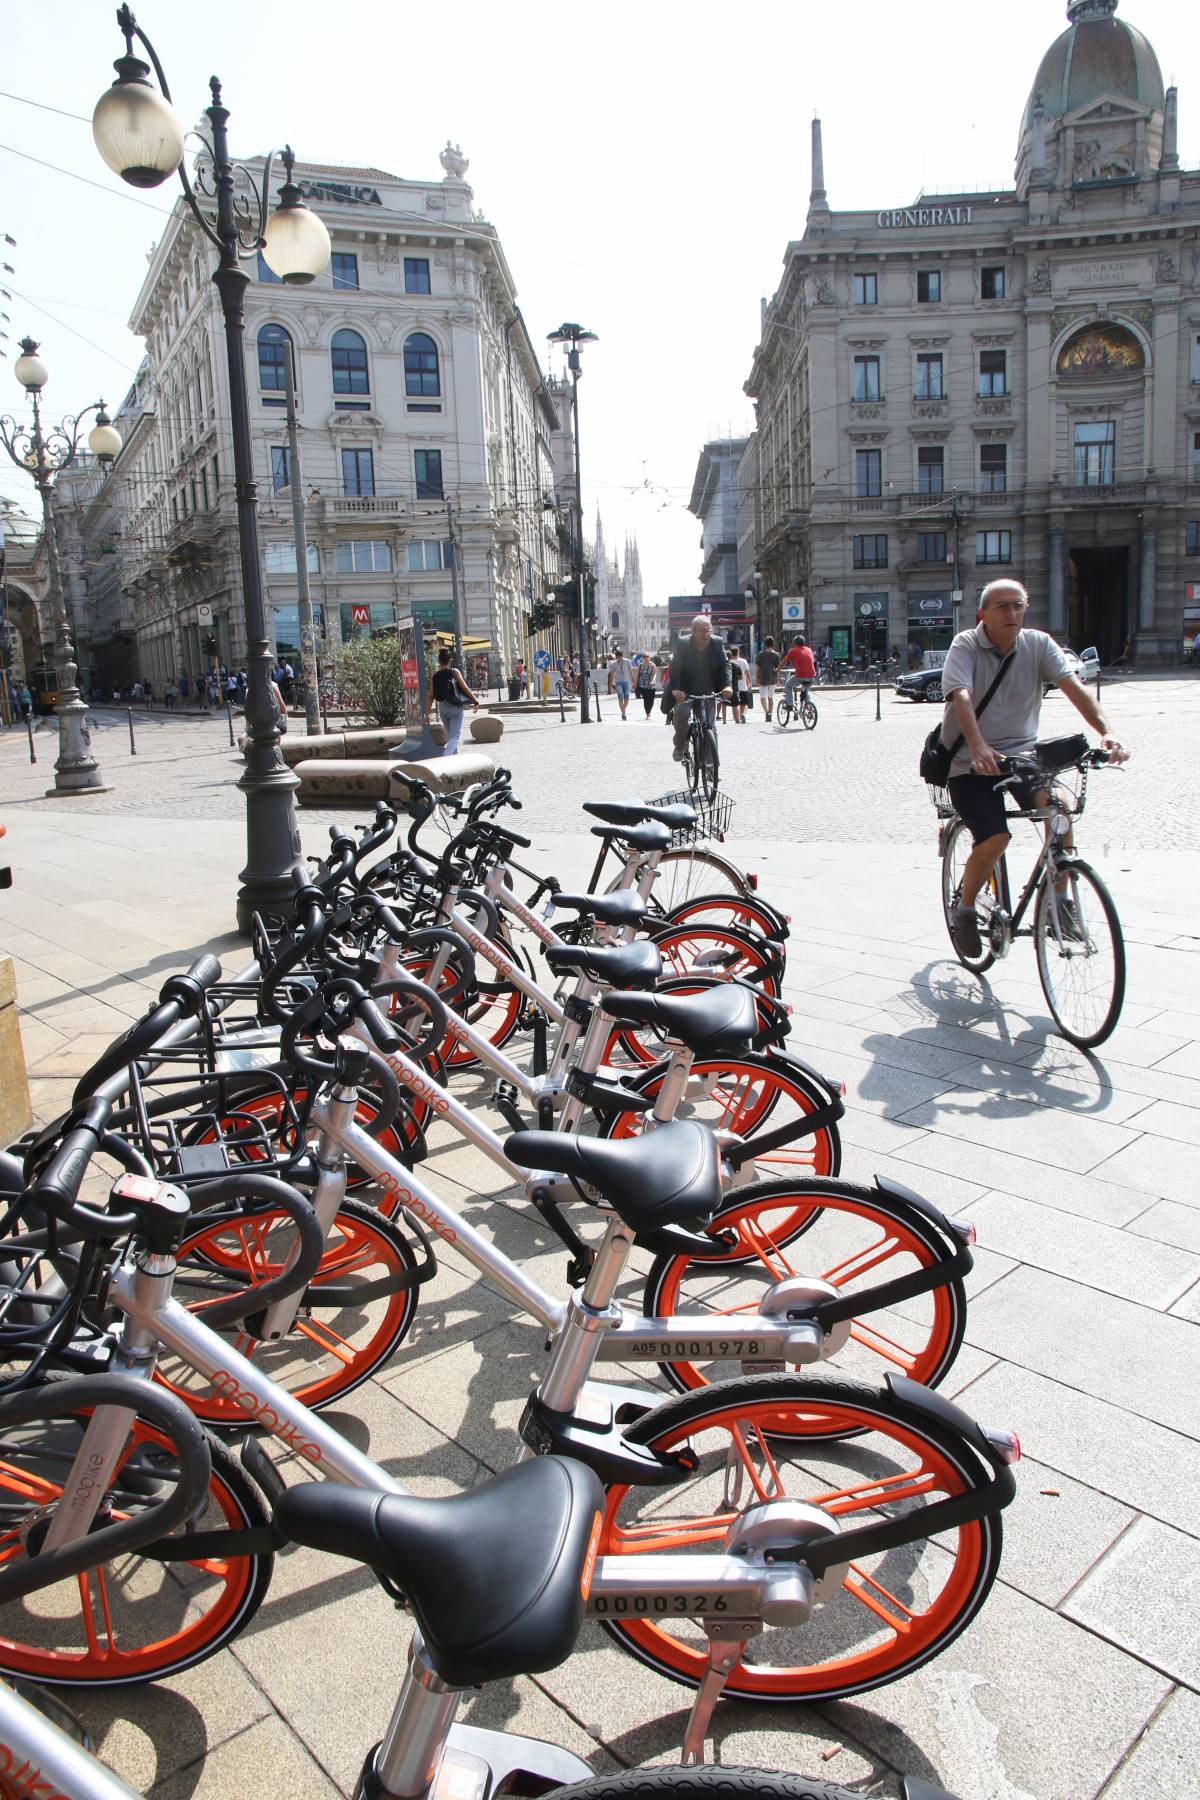 Bike sharing senza stazioni. L'assessore ai milanesi: "No al parcheggio selvaggio"